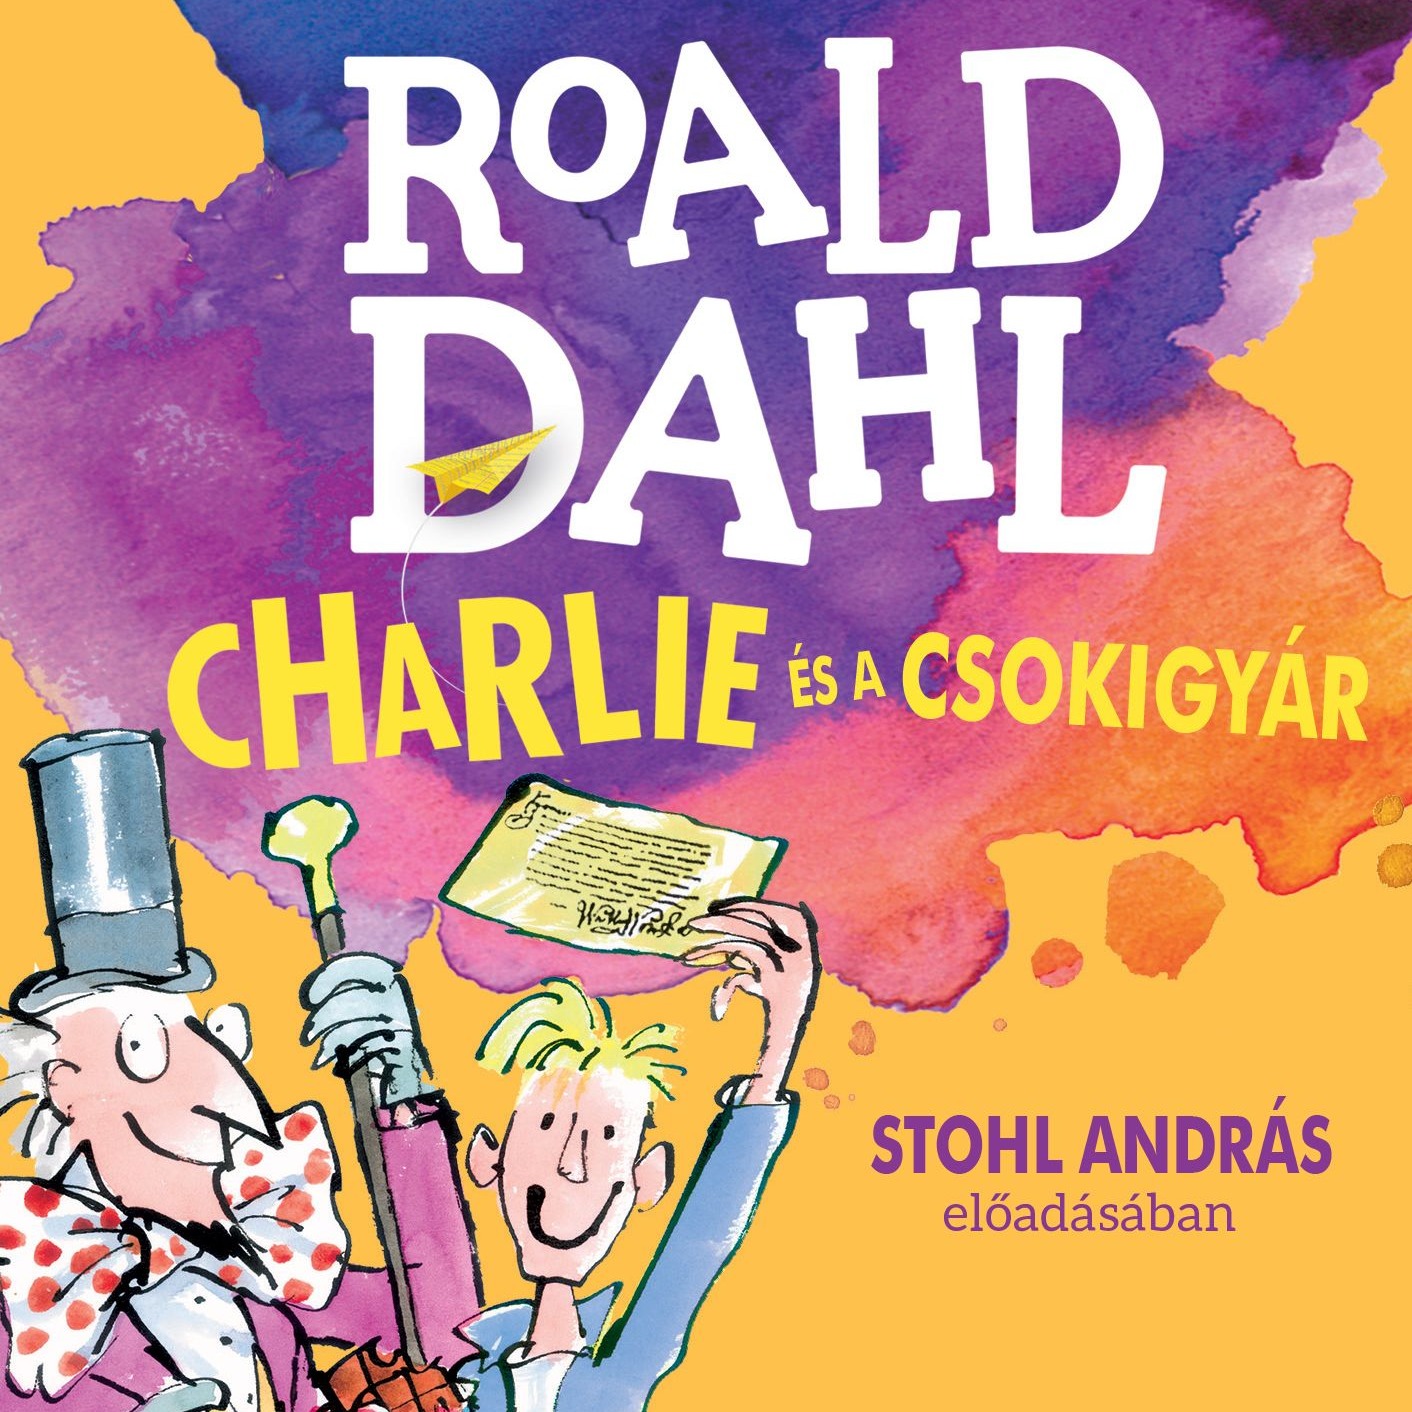 Roald Dahl - Charlie és a csokigyár [eHangoskönyv]